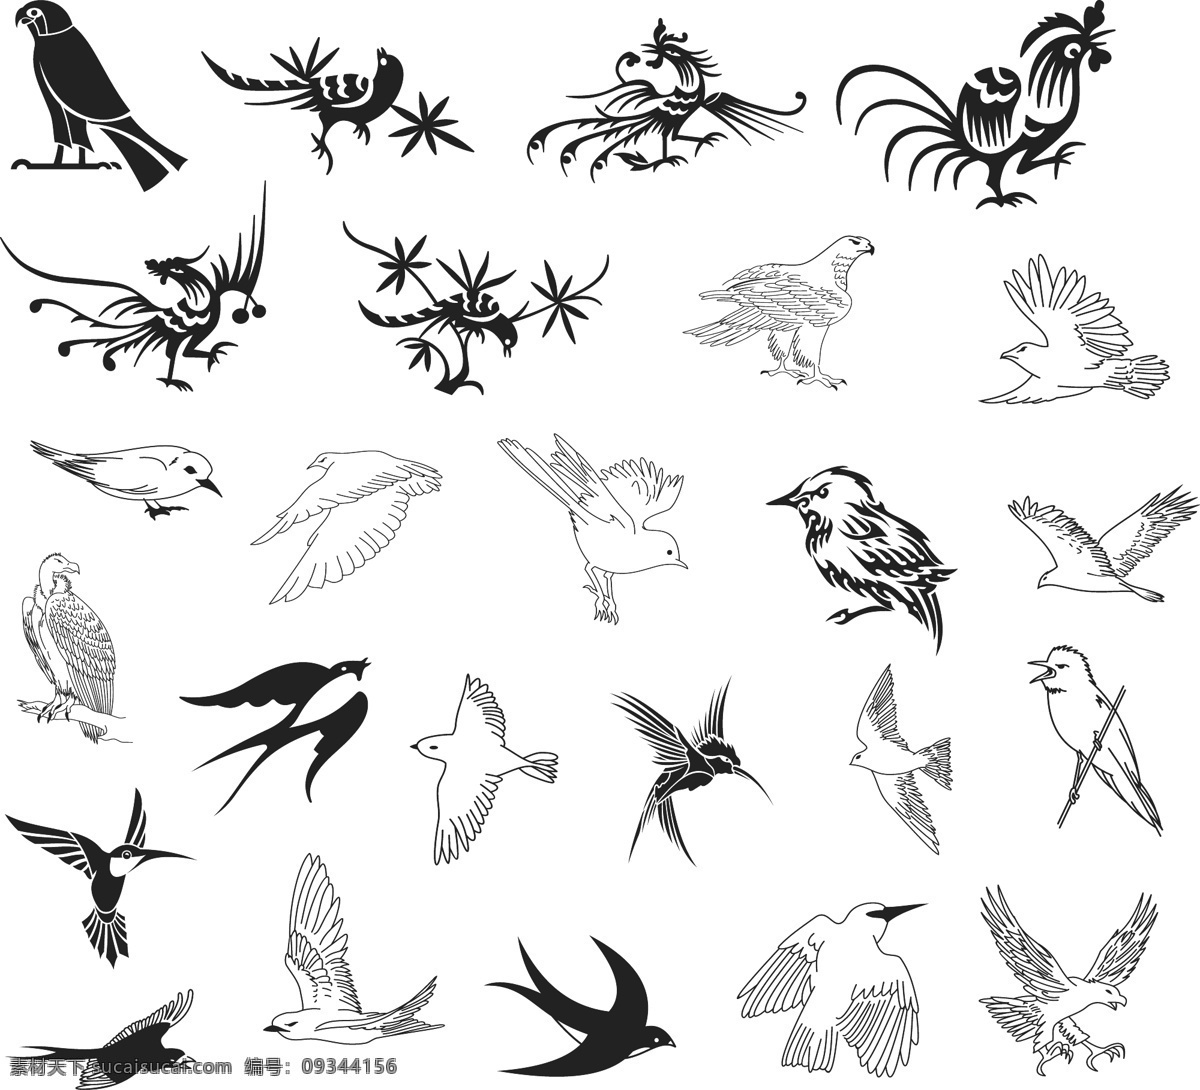 飞行 类 矢量 剪影 飞行类 鸟类 鸟 鸟矢量 鸟剪影 精品素材 生物世界